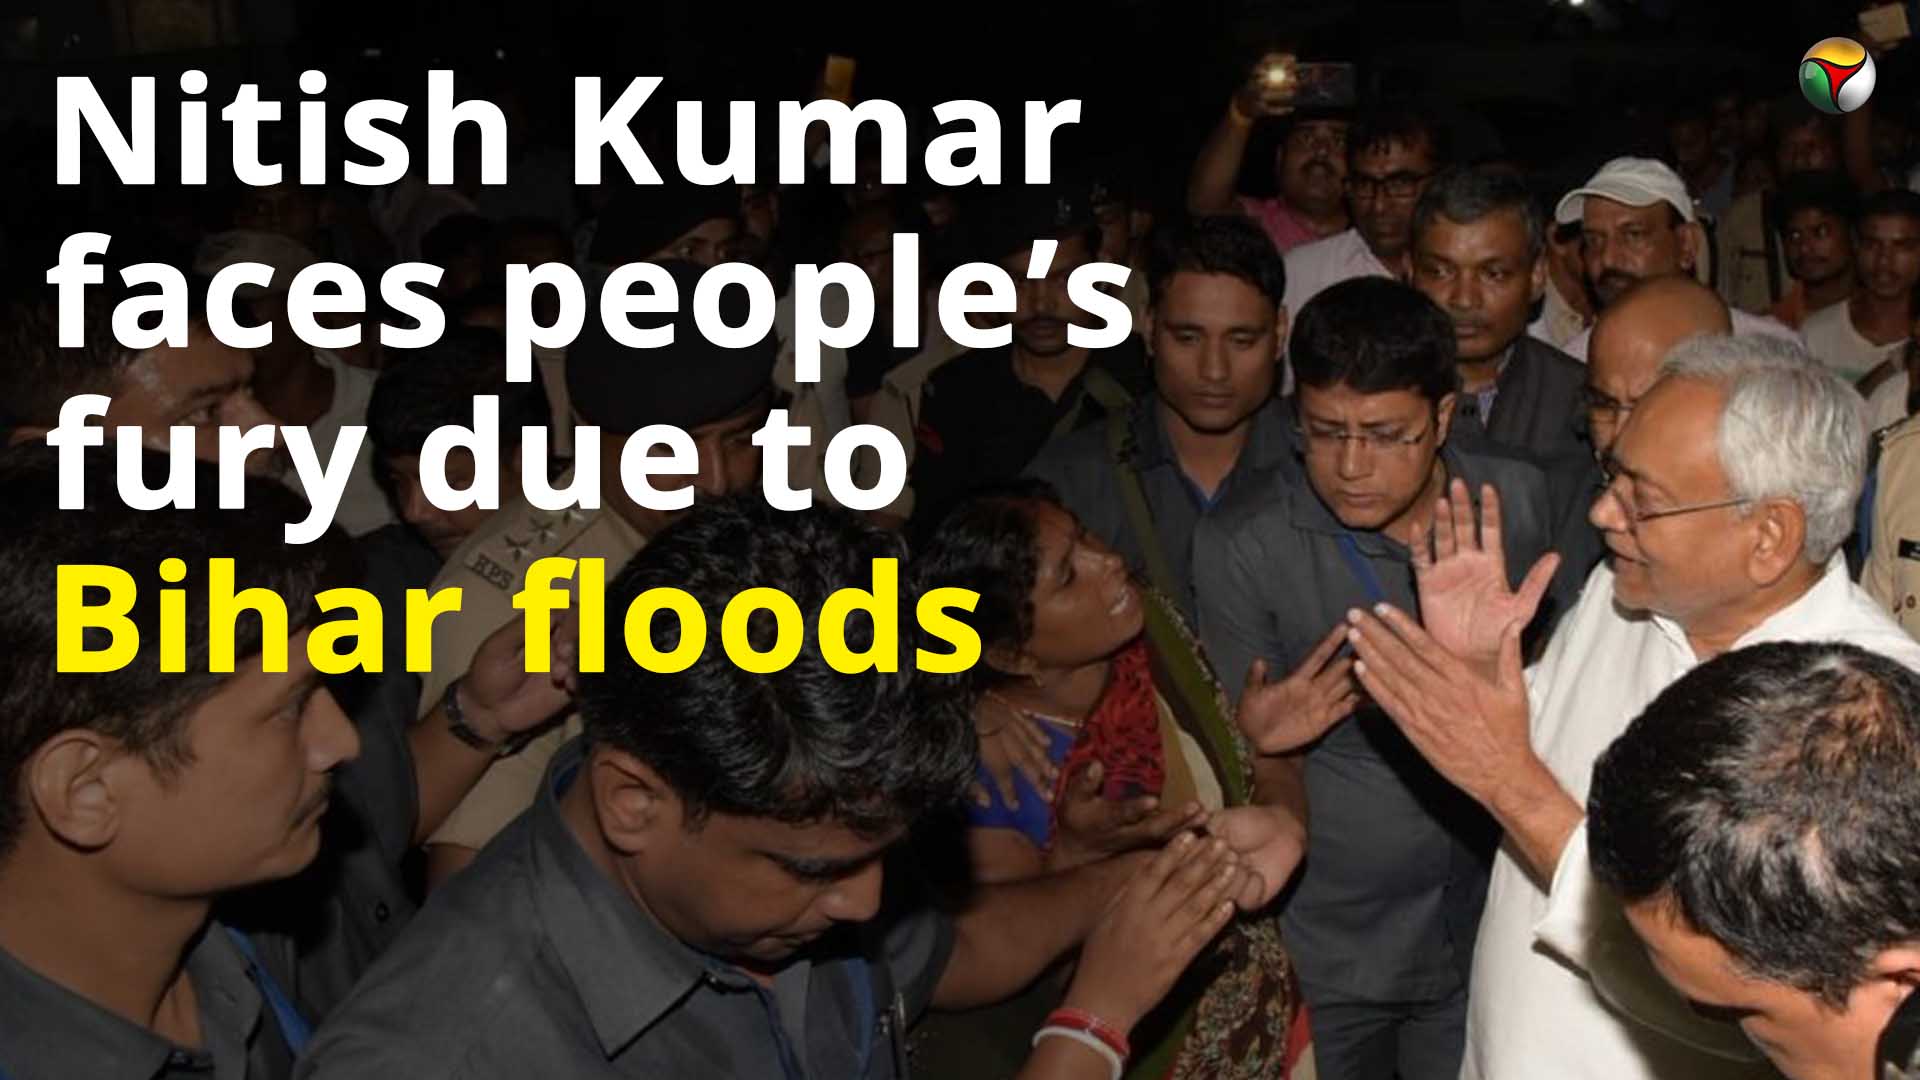 bihar floods, Bihar floods, Bihar